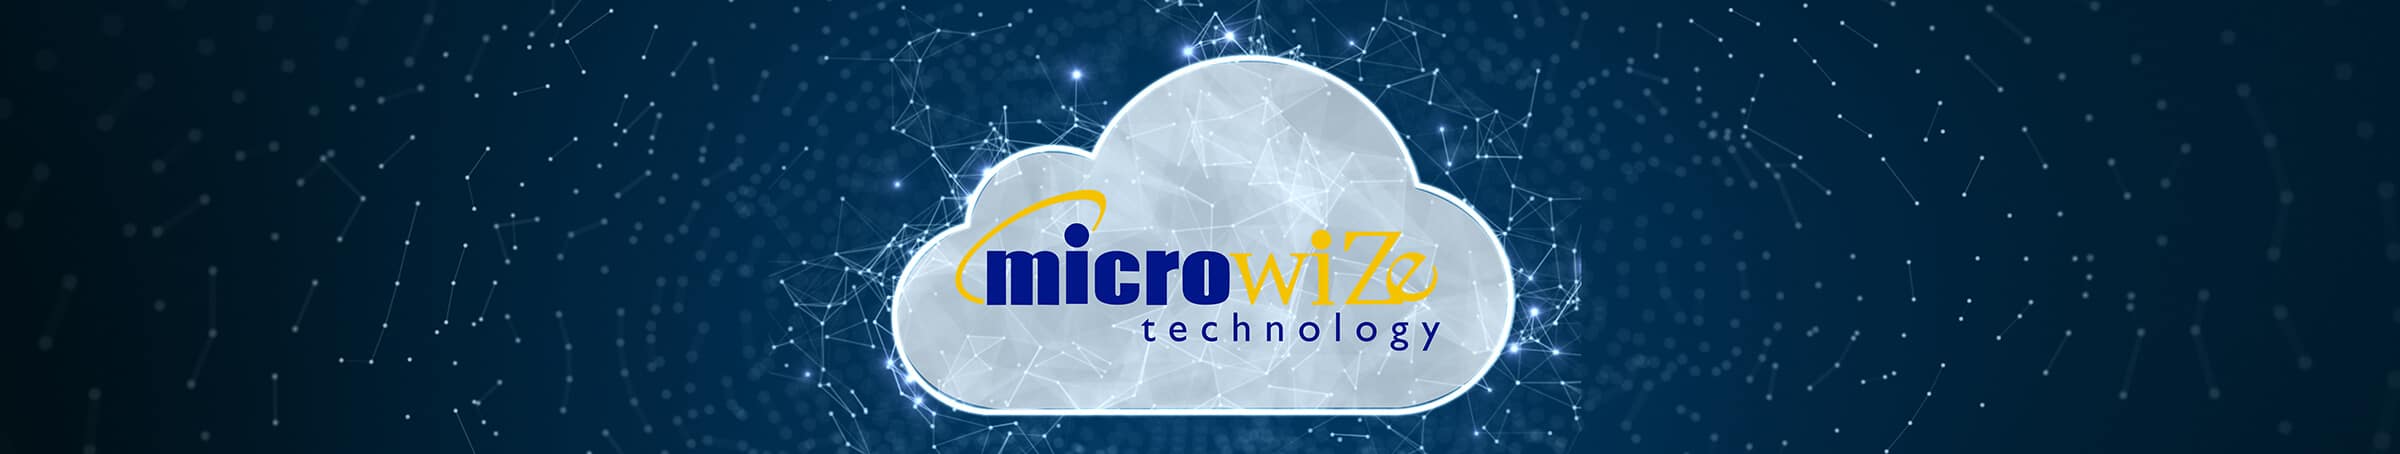 Microwize Cloud Computing